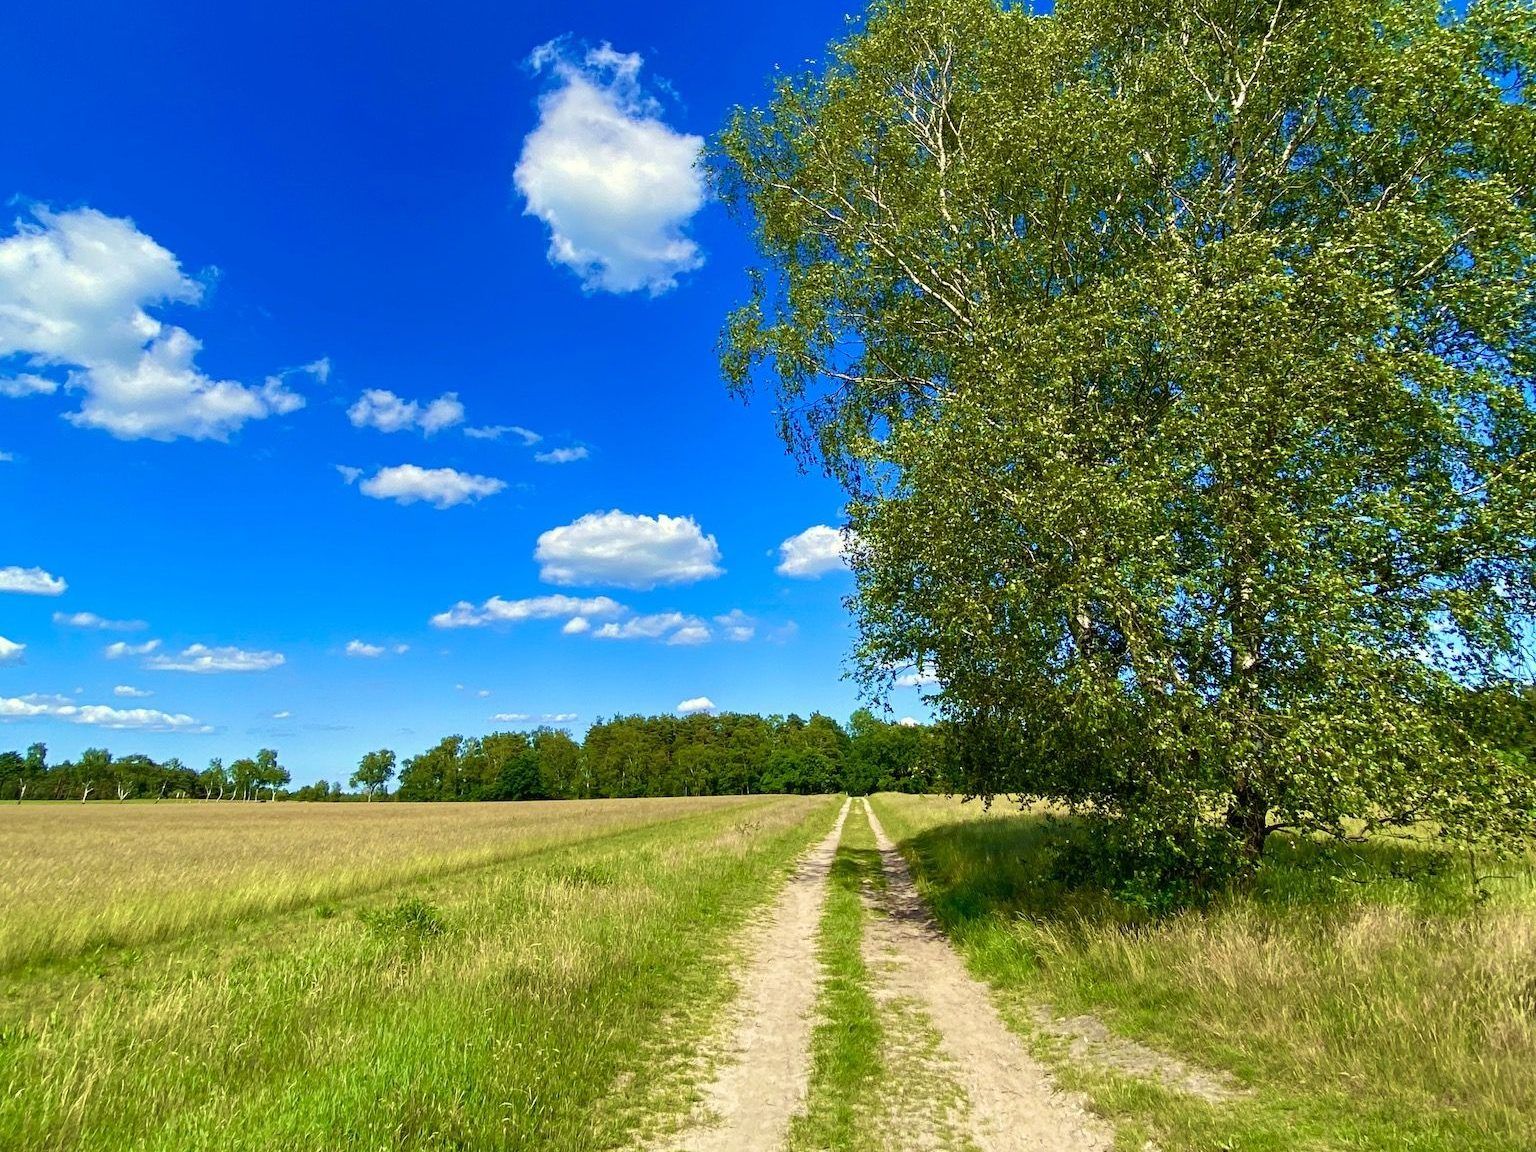 Puur natuur: tijdens een korte vakantie op de Lüneburger Heide kun je wandelen, joggen en op ontdekkingstocht gaan. Foto: Sascha Tegtmeyer